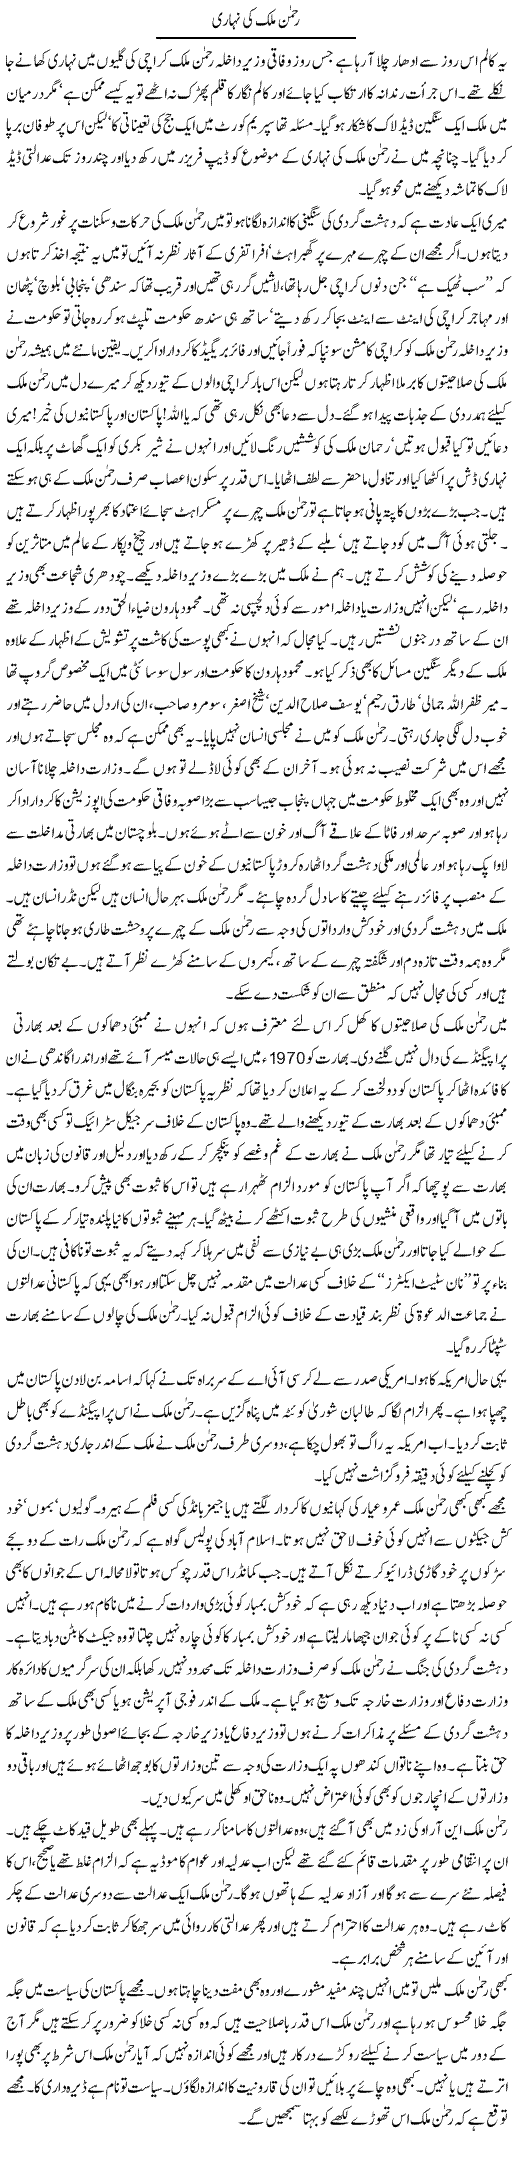 Rehman Malik ki nihari Express Column Asadullah Galib 19 Feb 2010